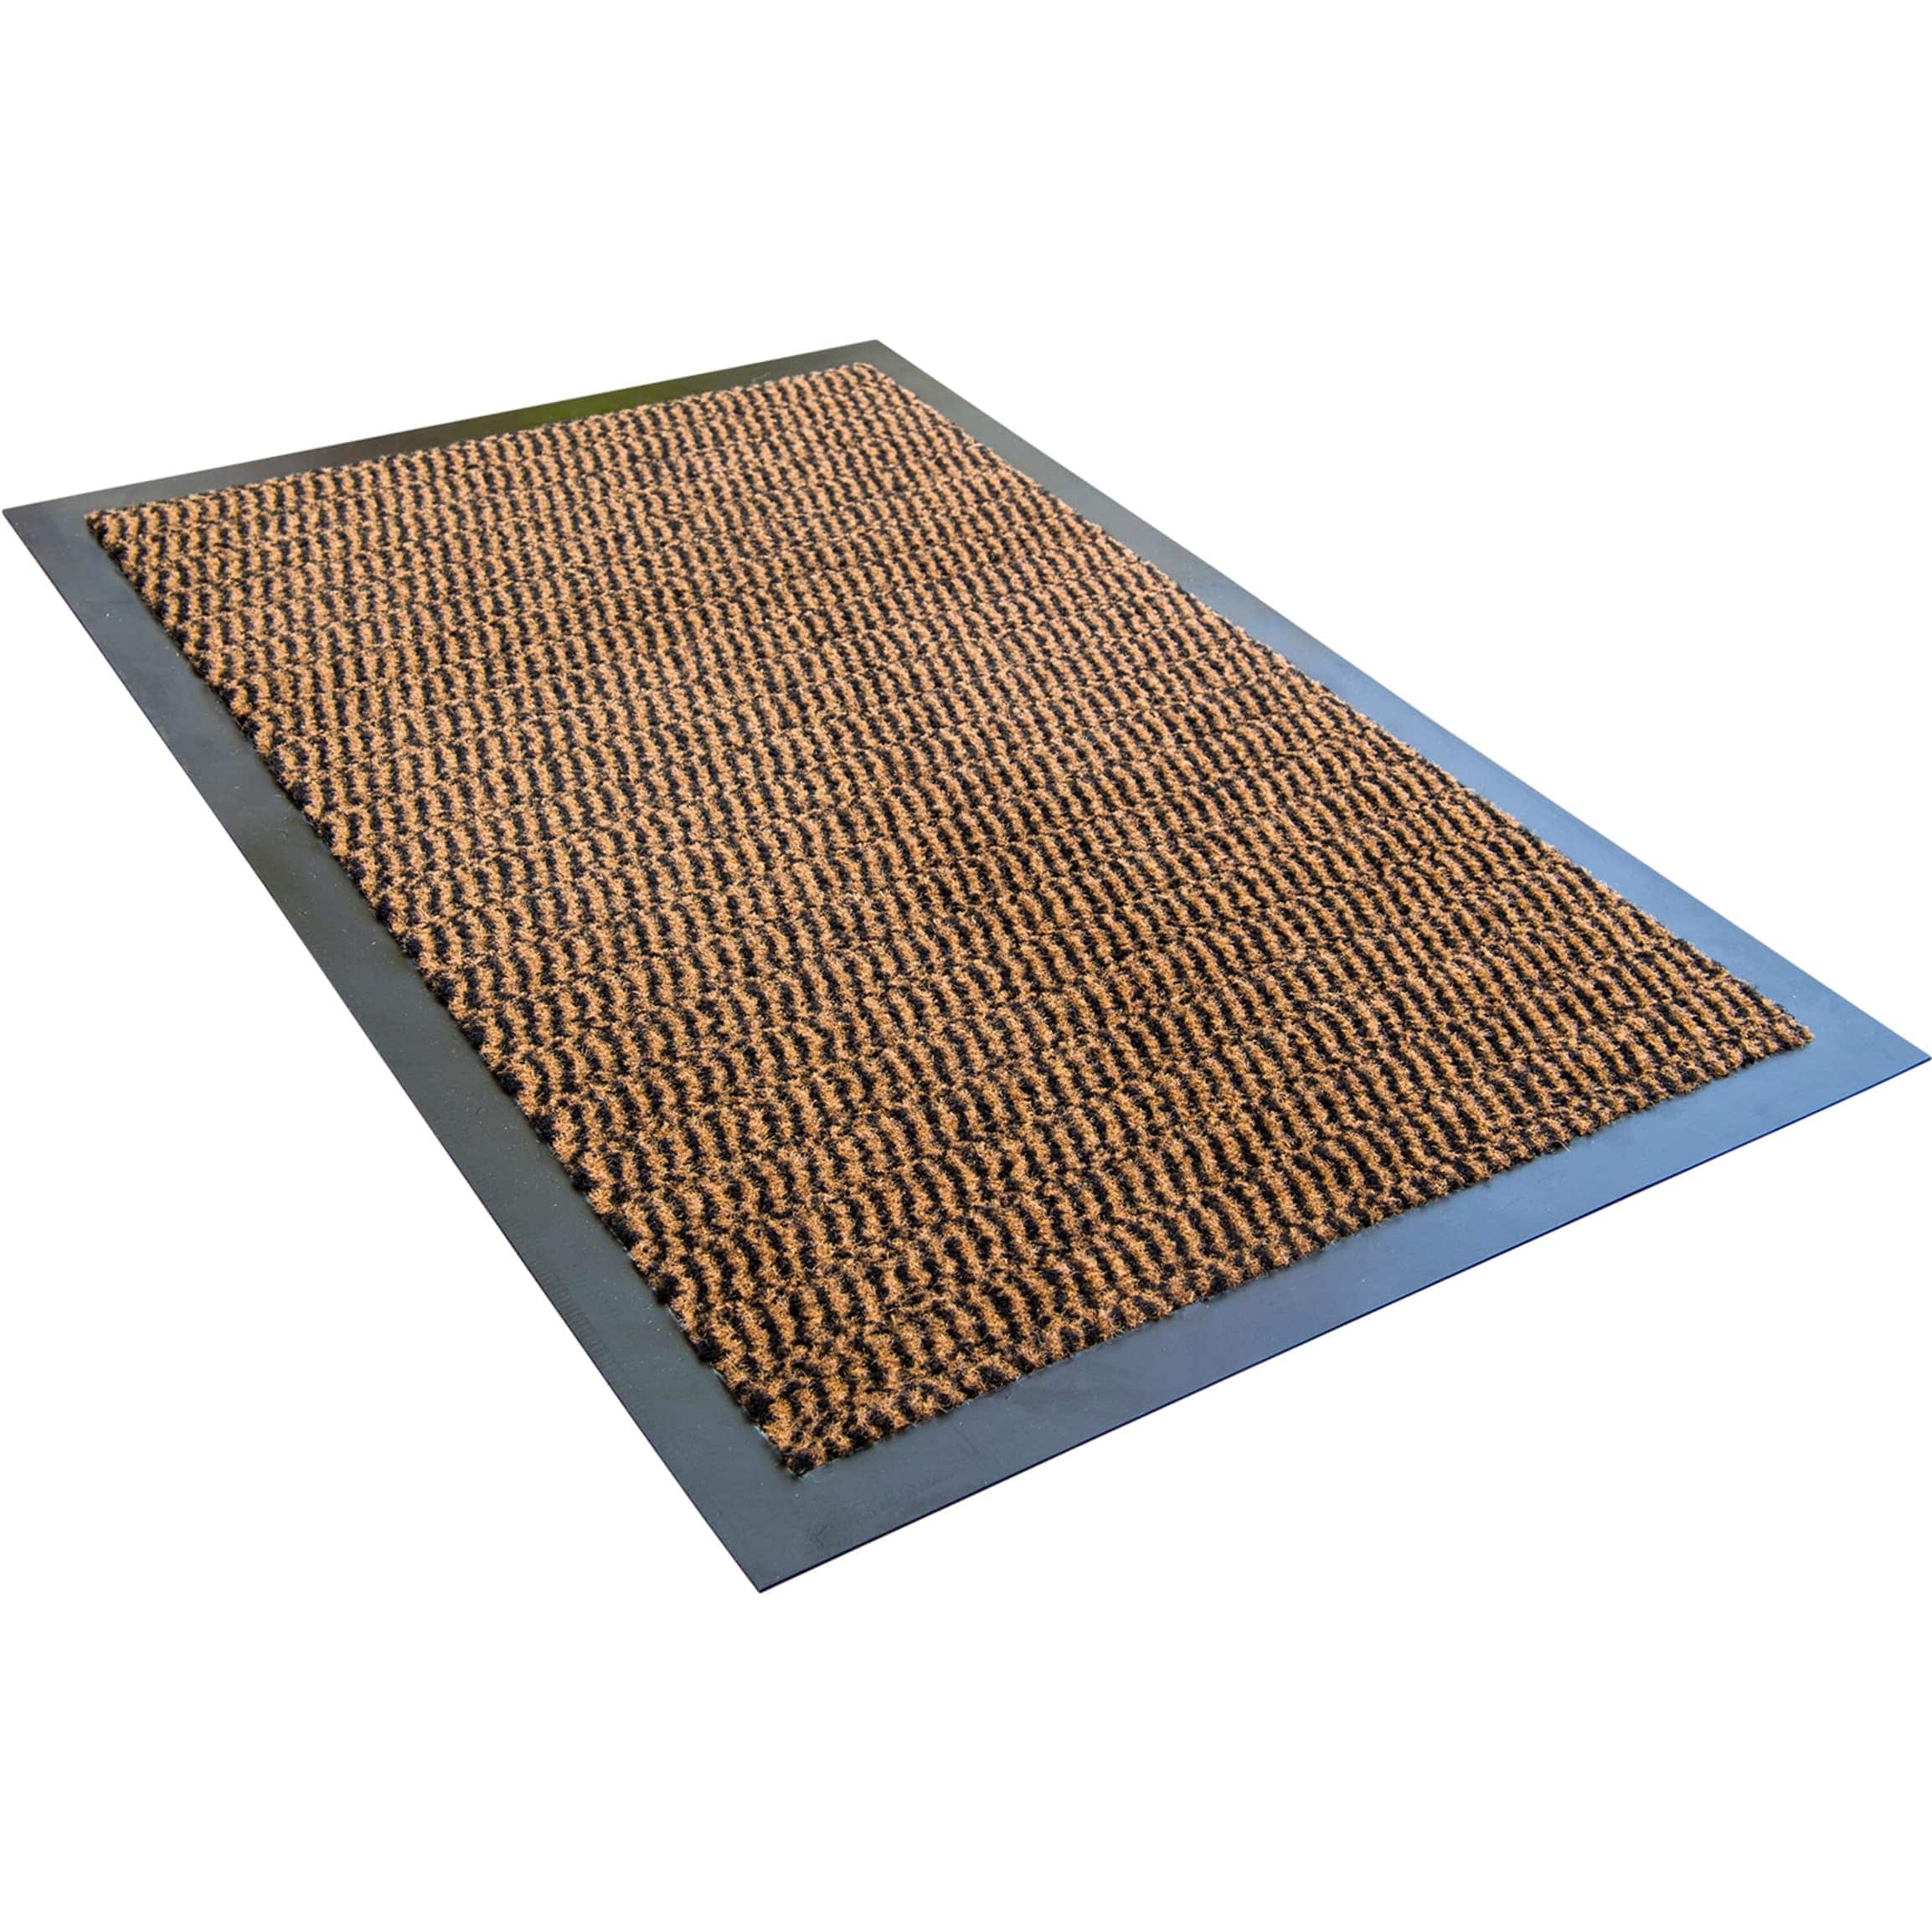 Doormat, Coir & Rubber Rectangular, 24 x 36-In.